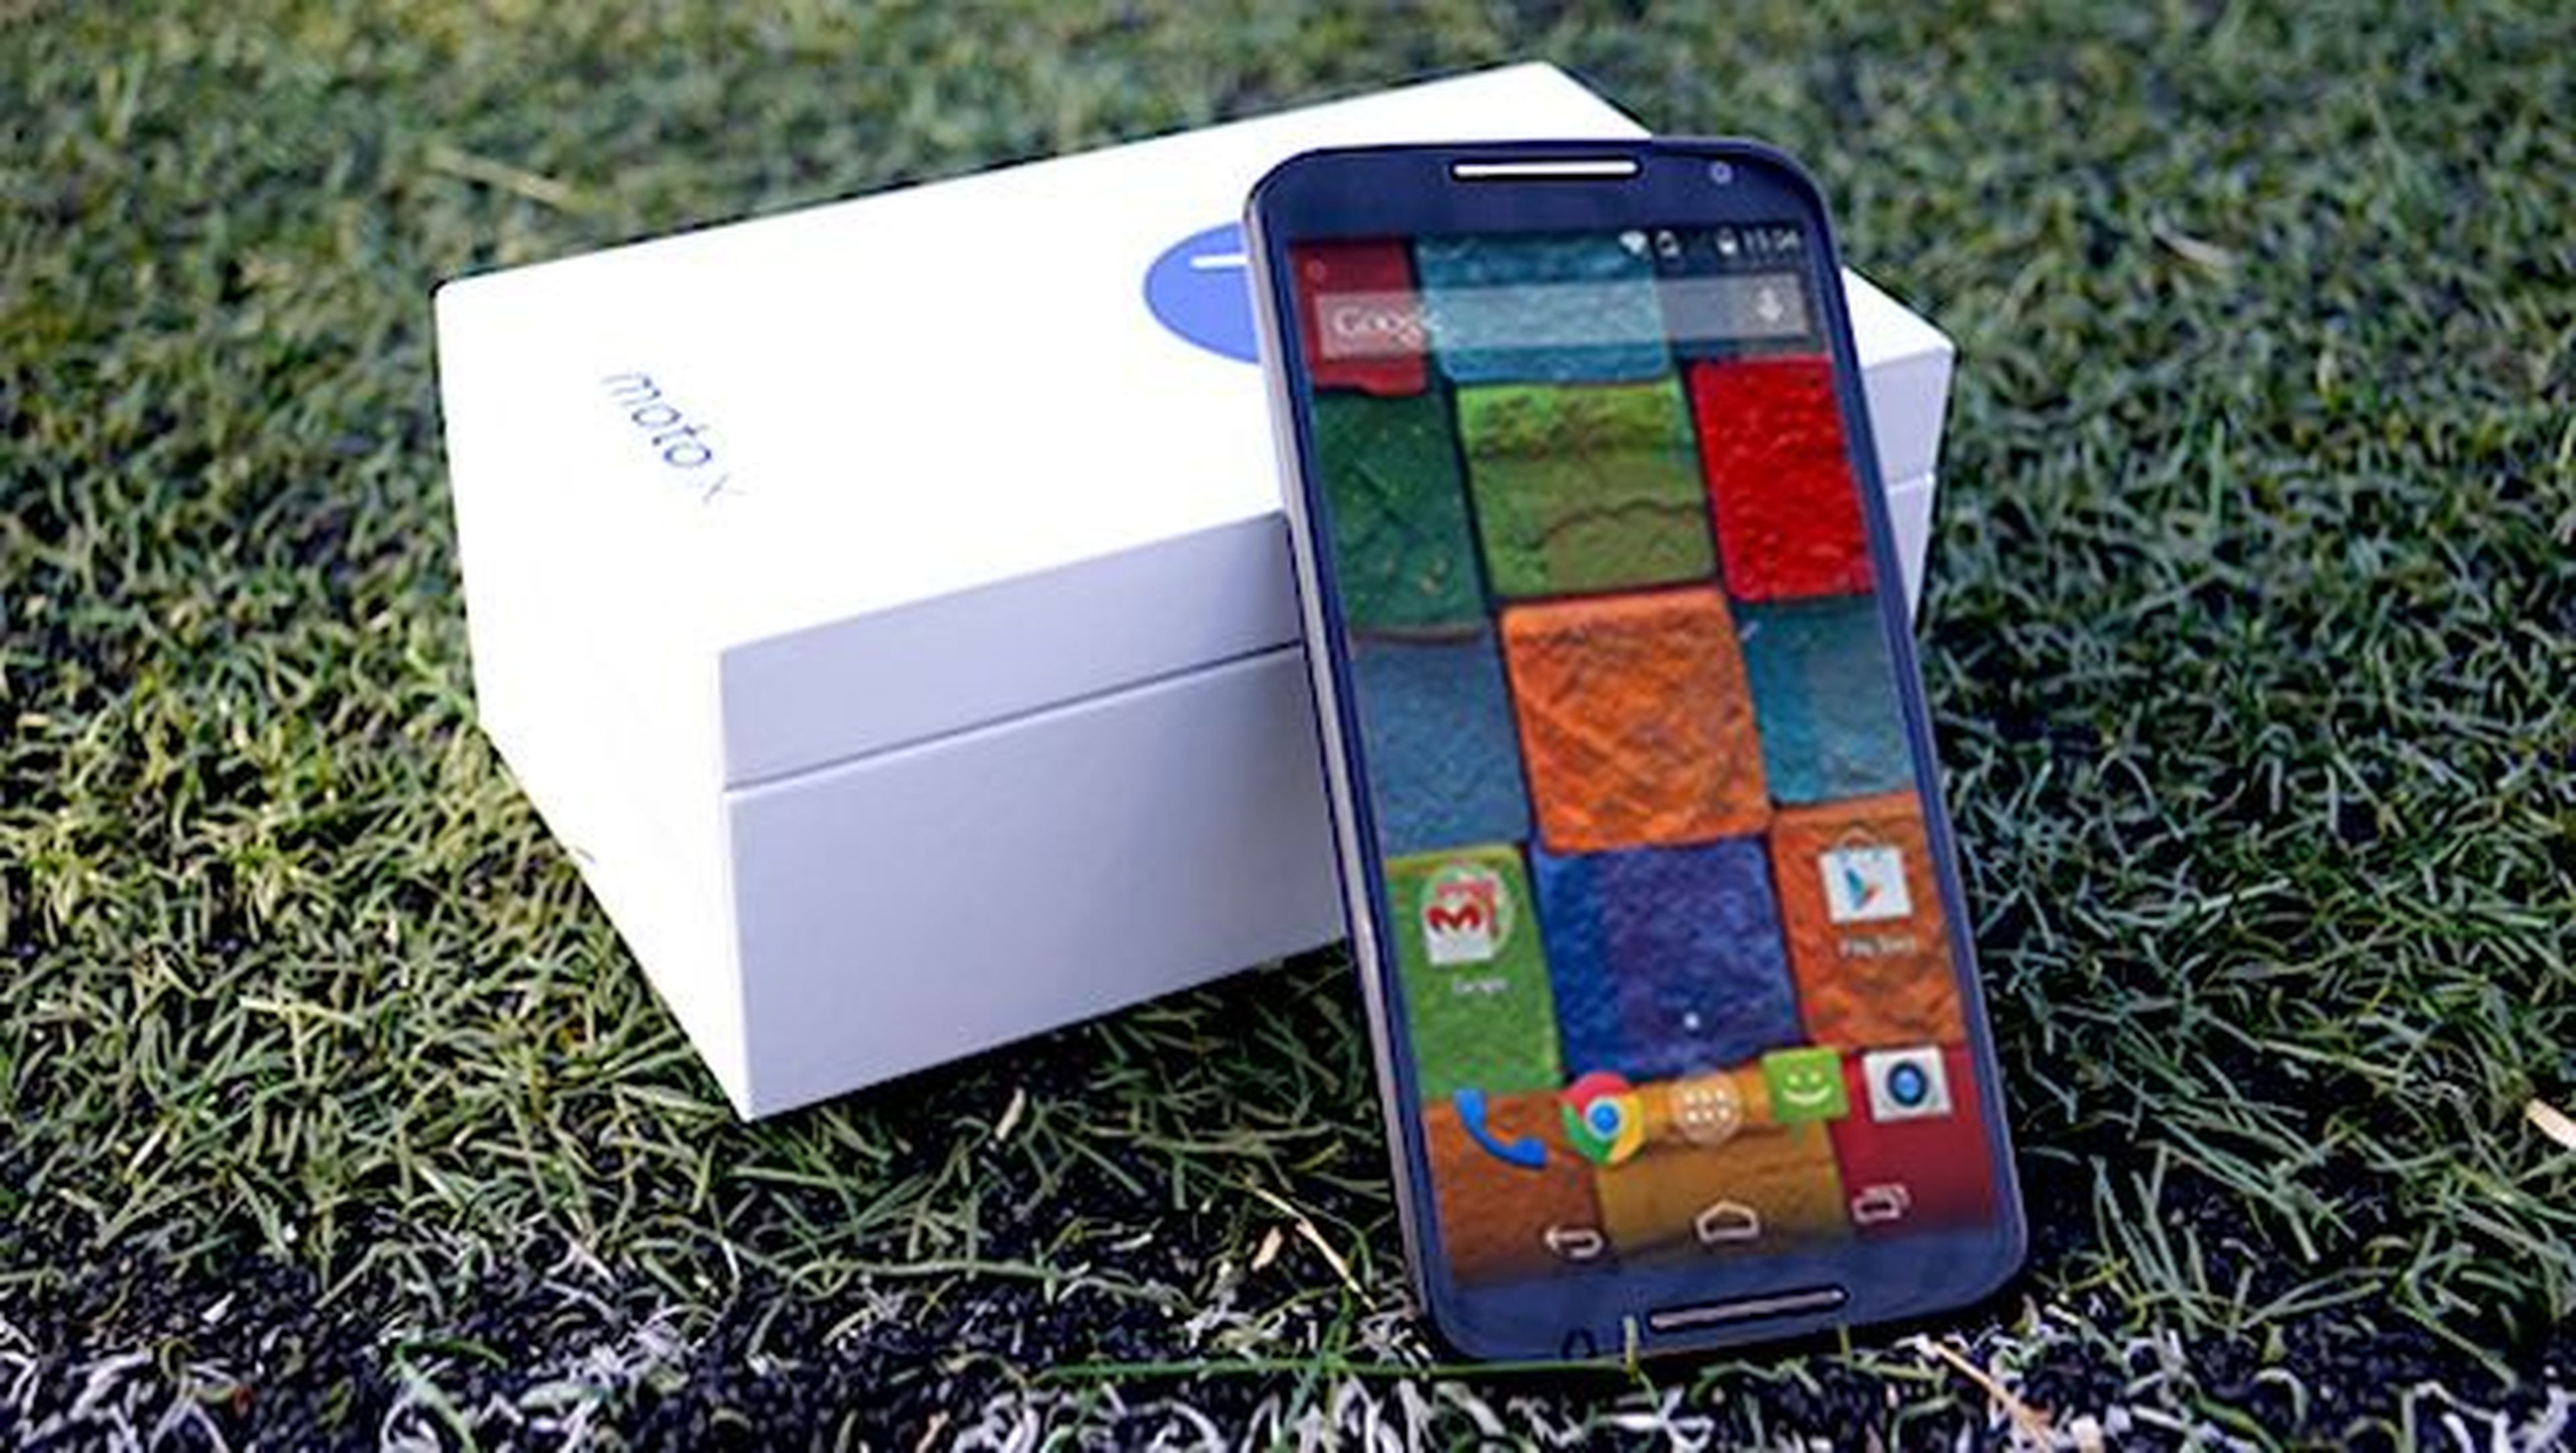 Motorola Moto X 2015, así será según sus características filtradas